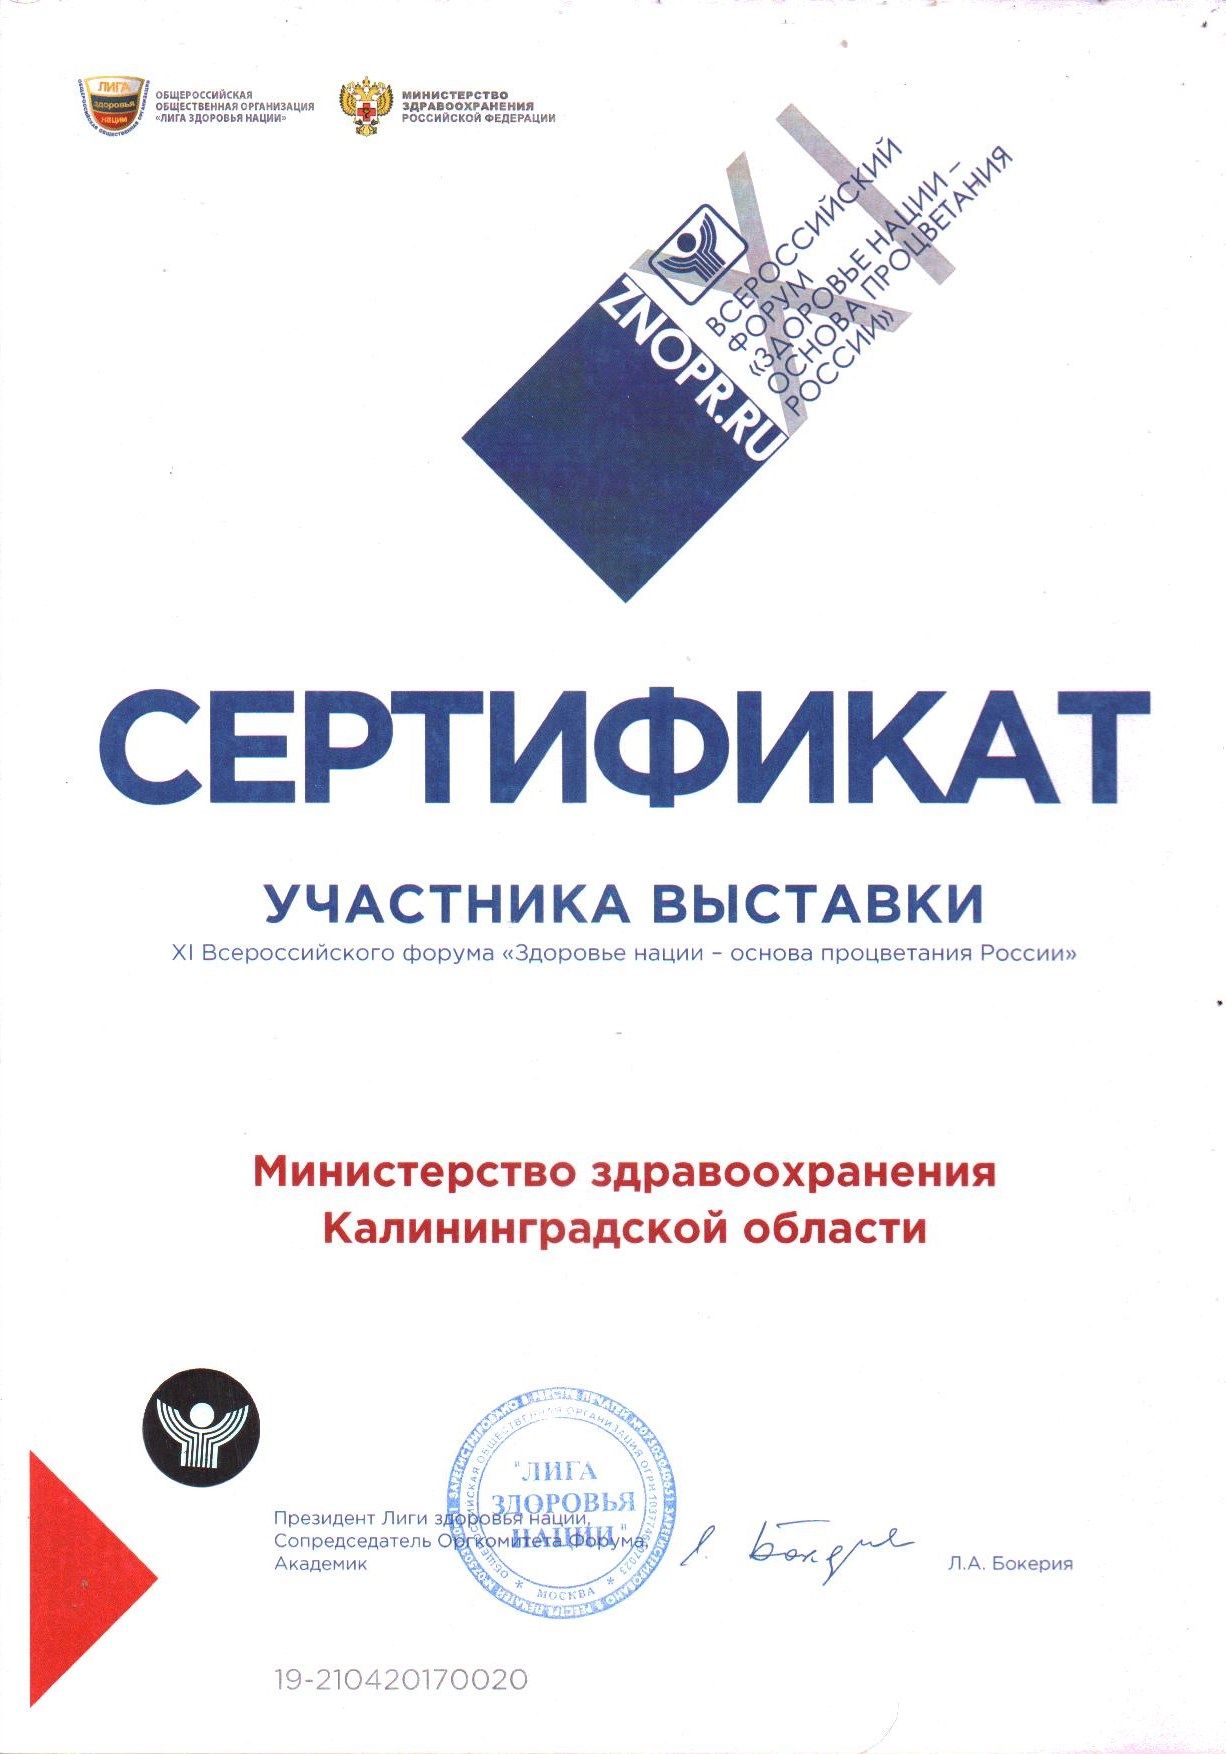 Региональный минздрав принял участие в выставке XI Всероссийского форума «Здоровье Нации – основа процветания России»